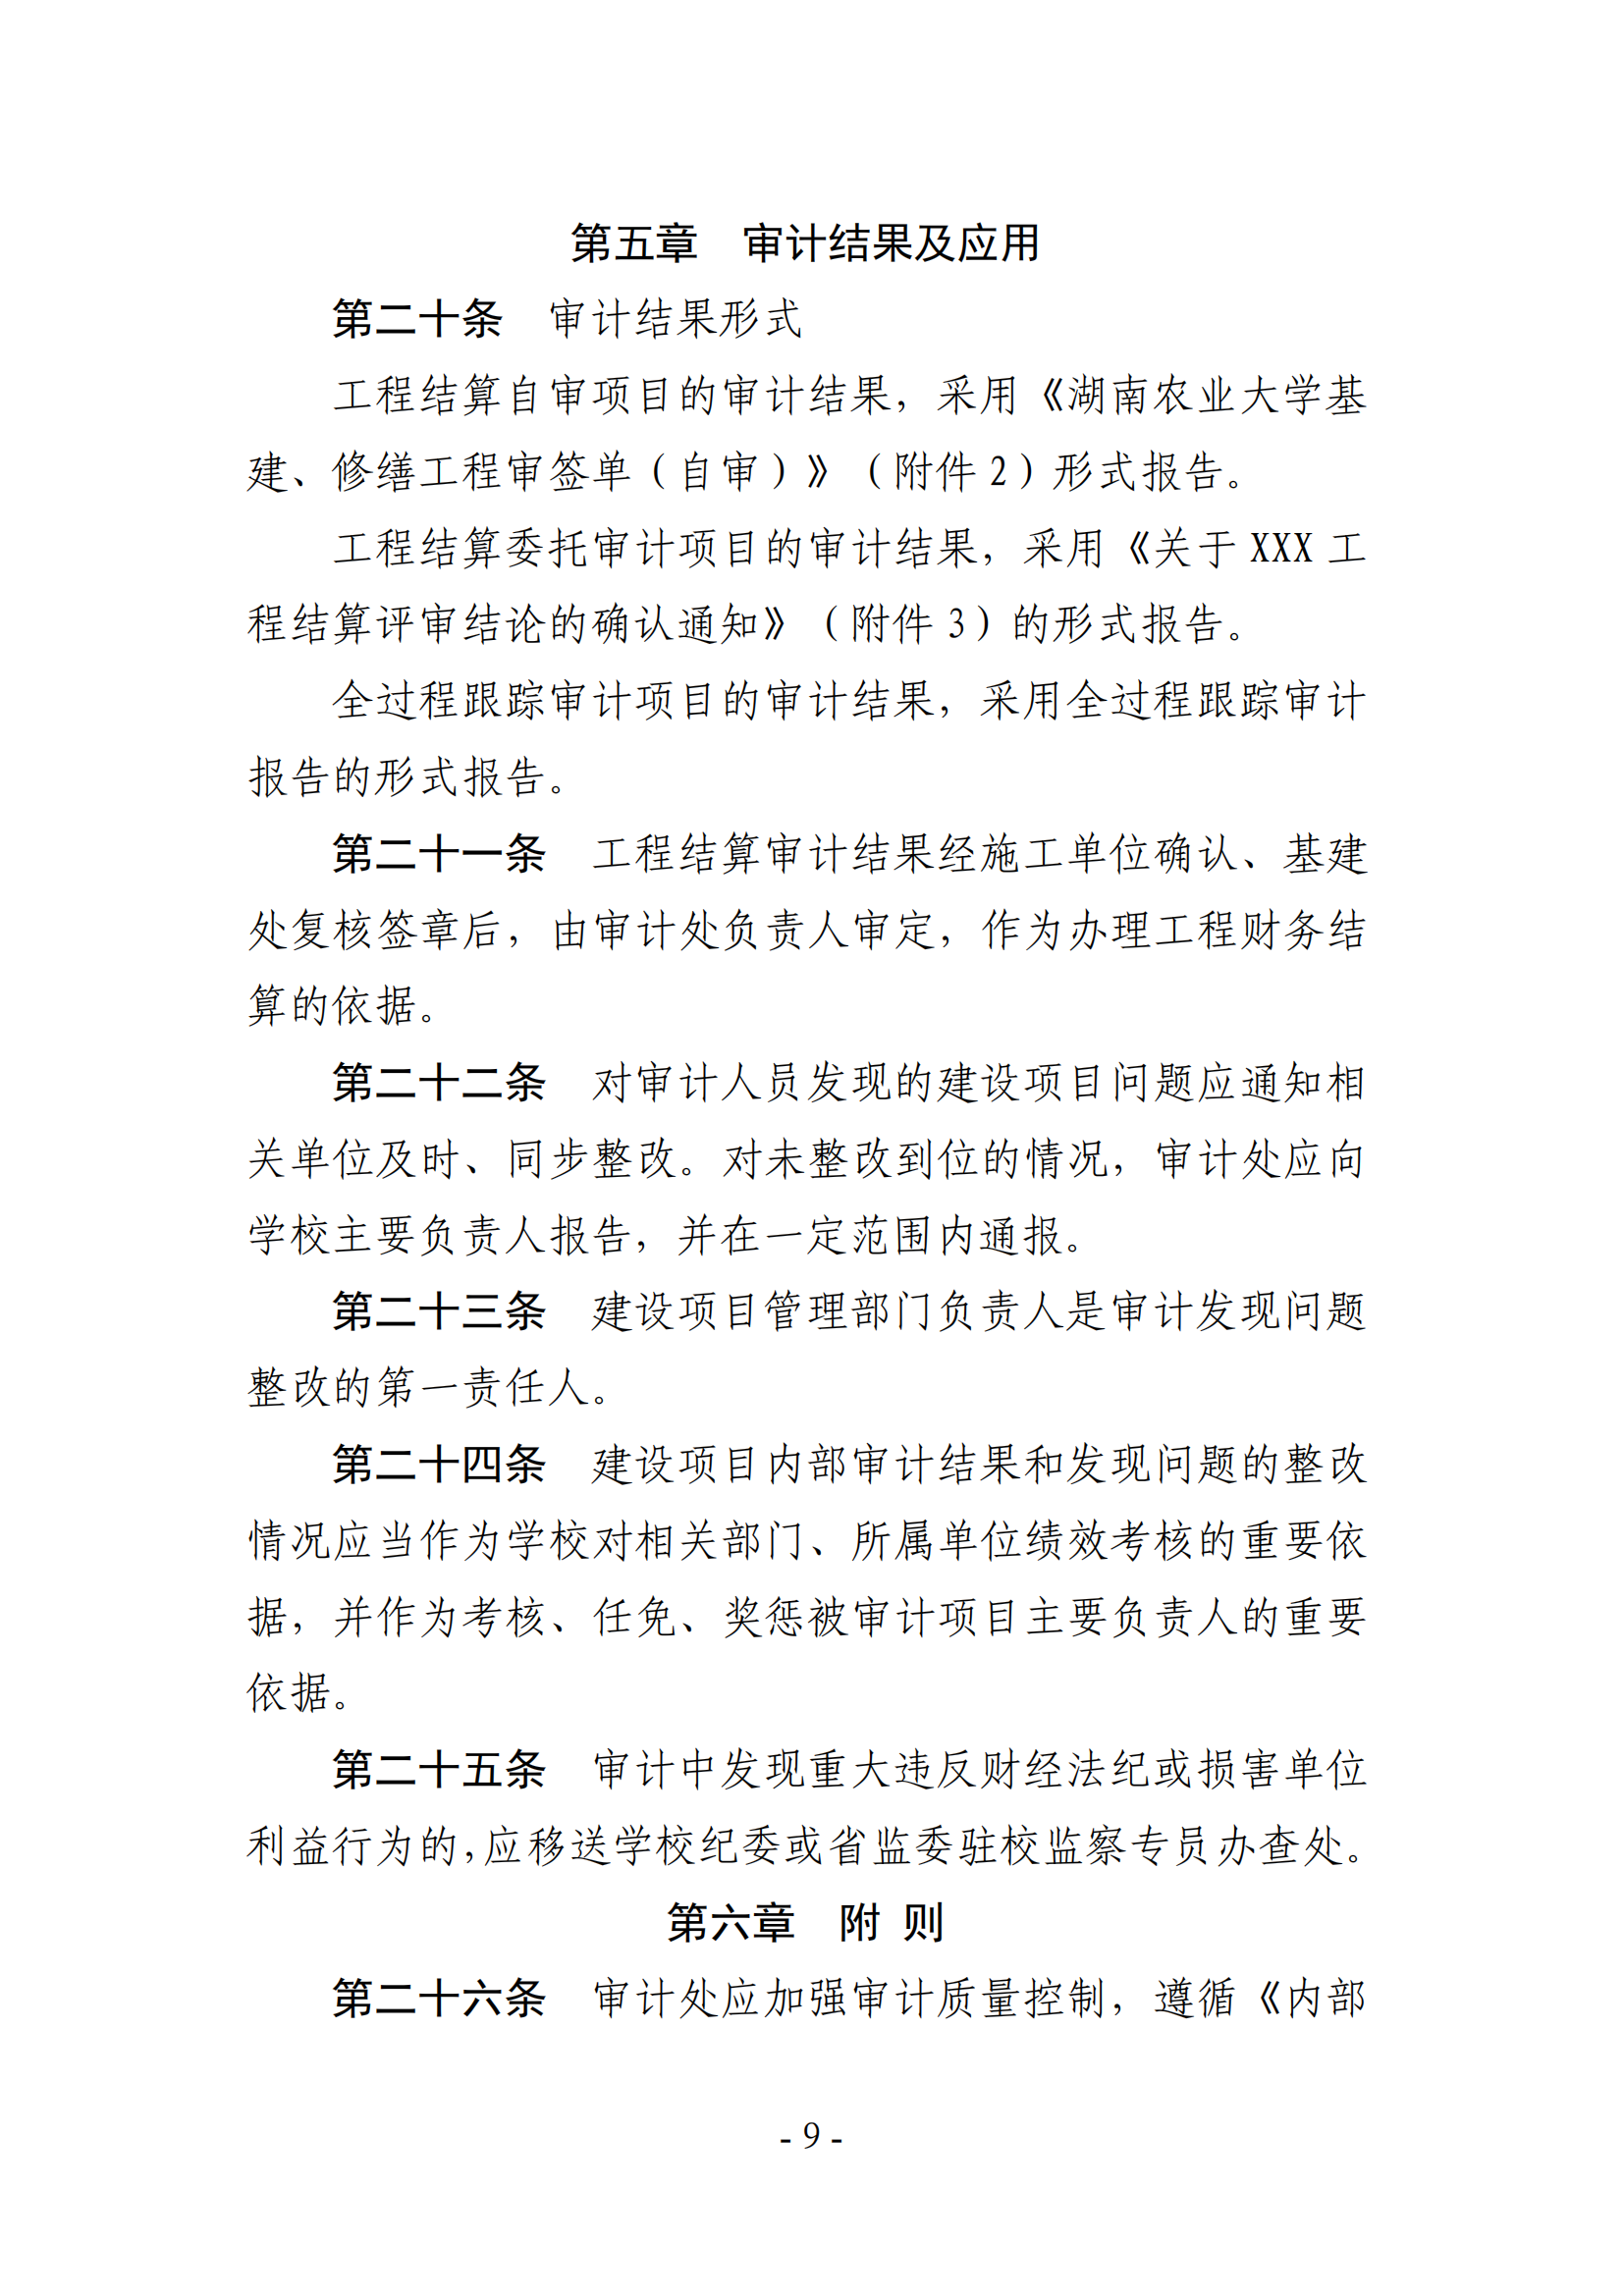 关于印发《湖南农业大学基建、修缮工程项目审计实施办法》的通知-正文_08.png